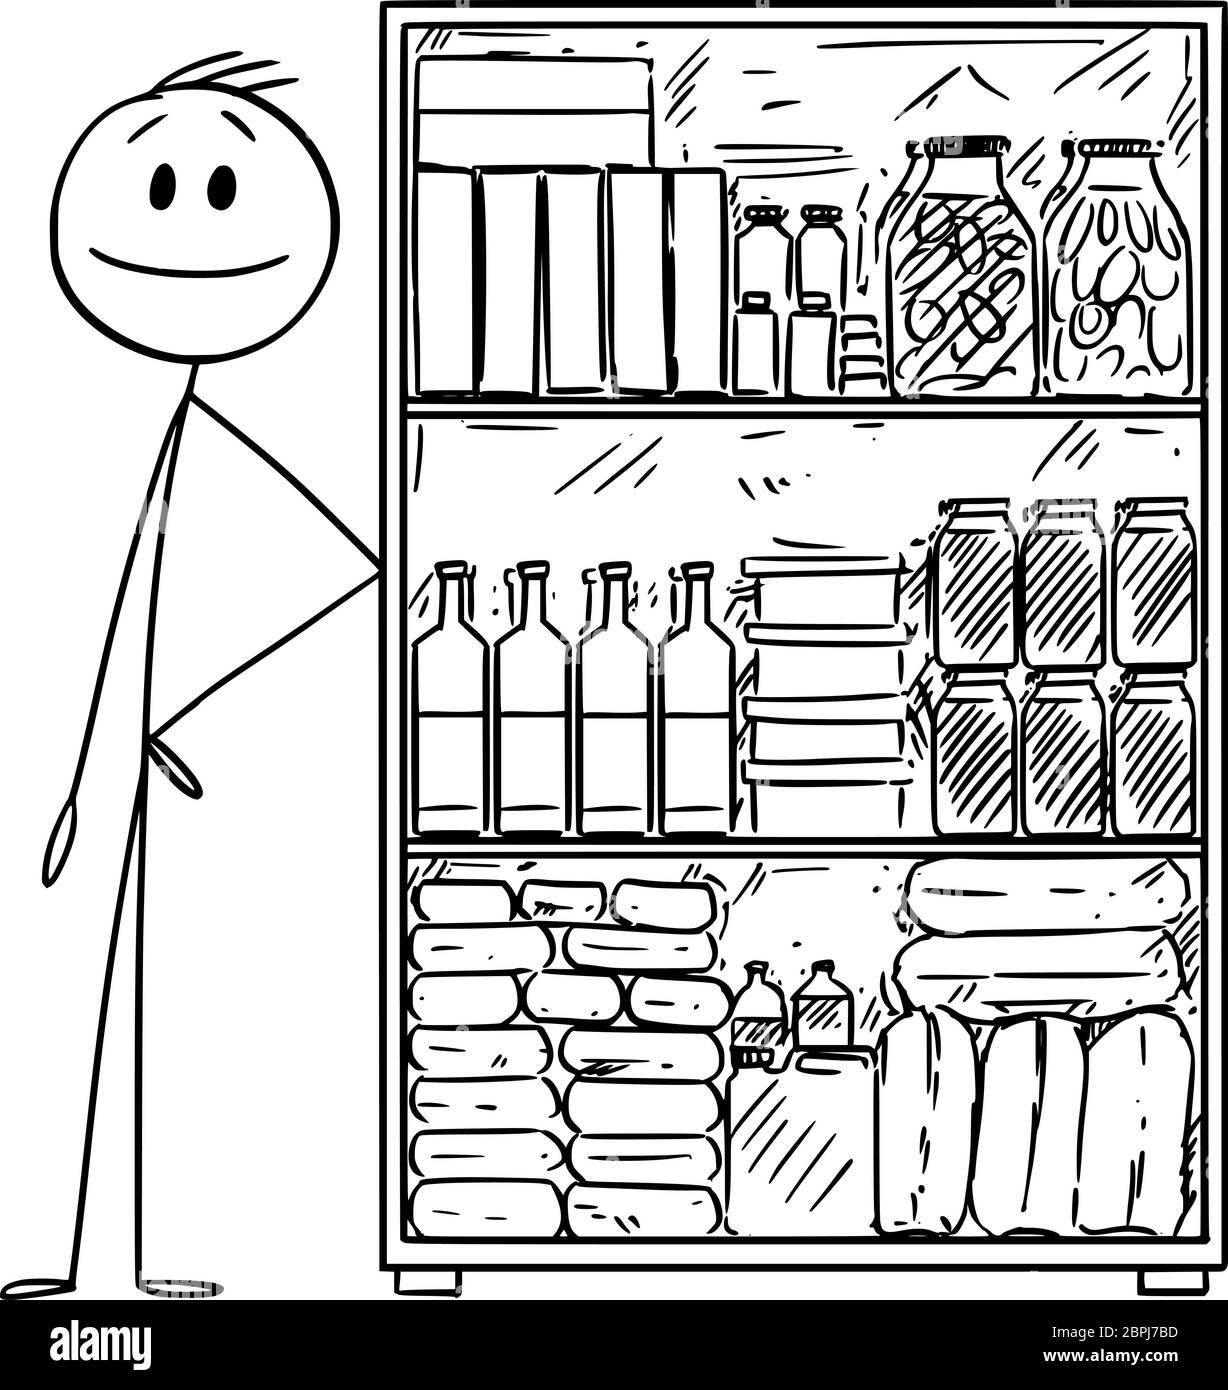 Vektor Cartoon Stick Figur Zeichnung konzeptionelle Illustration des Menschen mit Vorrat von Lebensmitteln für die Krise oder Coronavirus covid-19 Epidemie. Stock Vektor